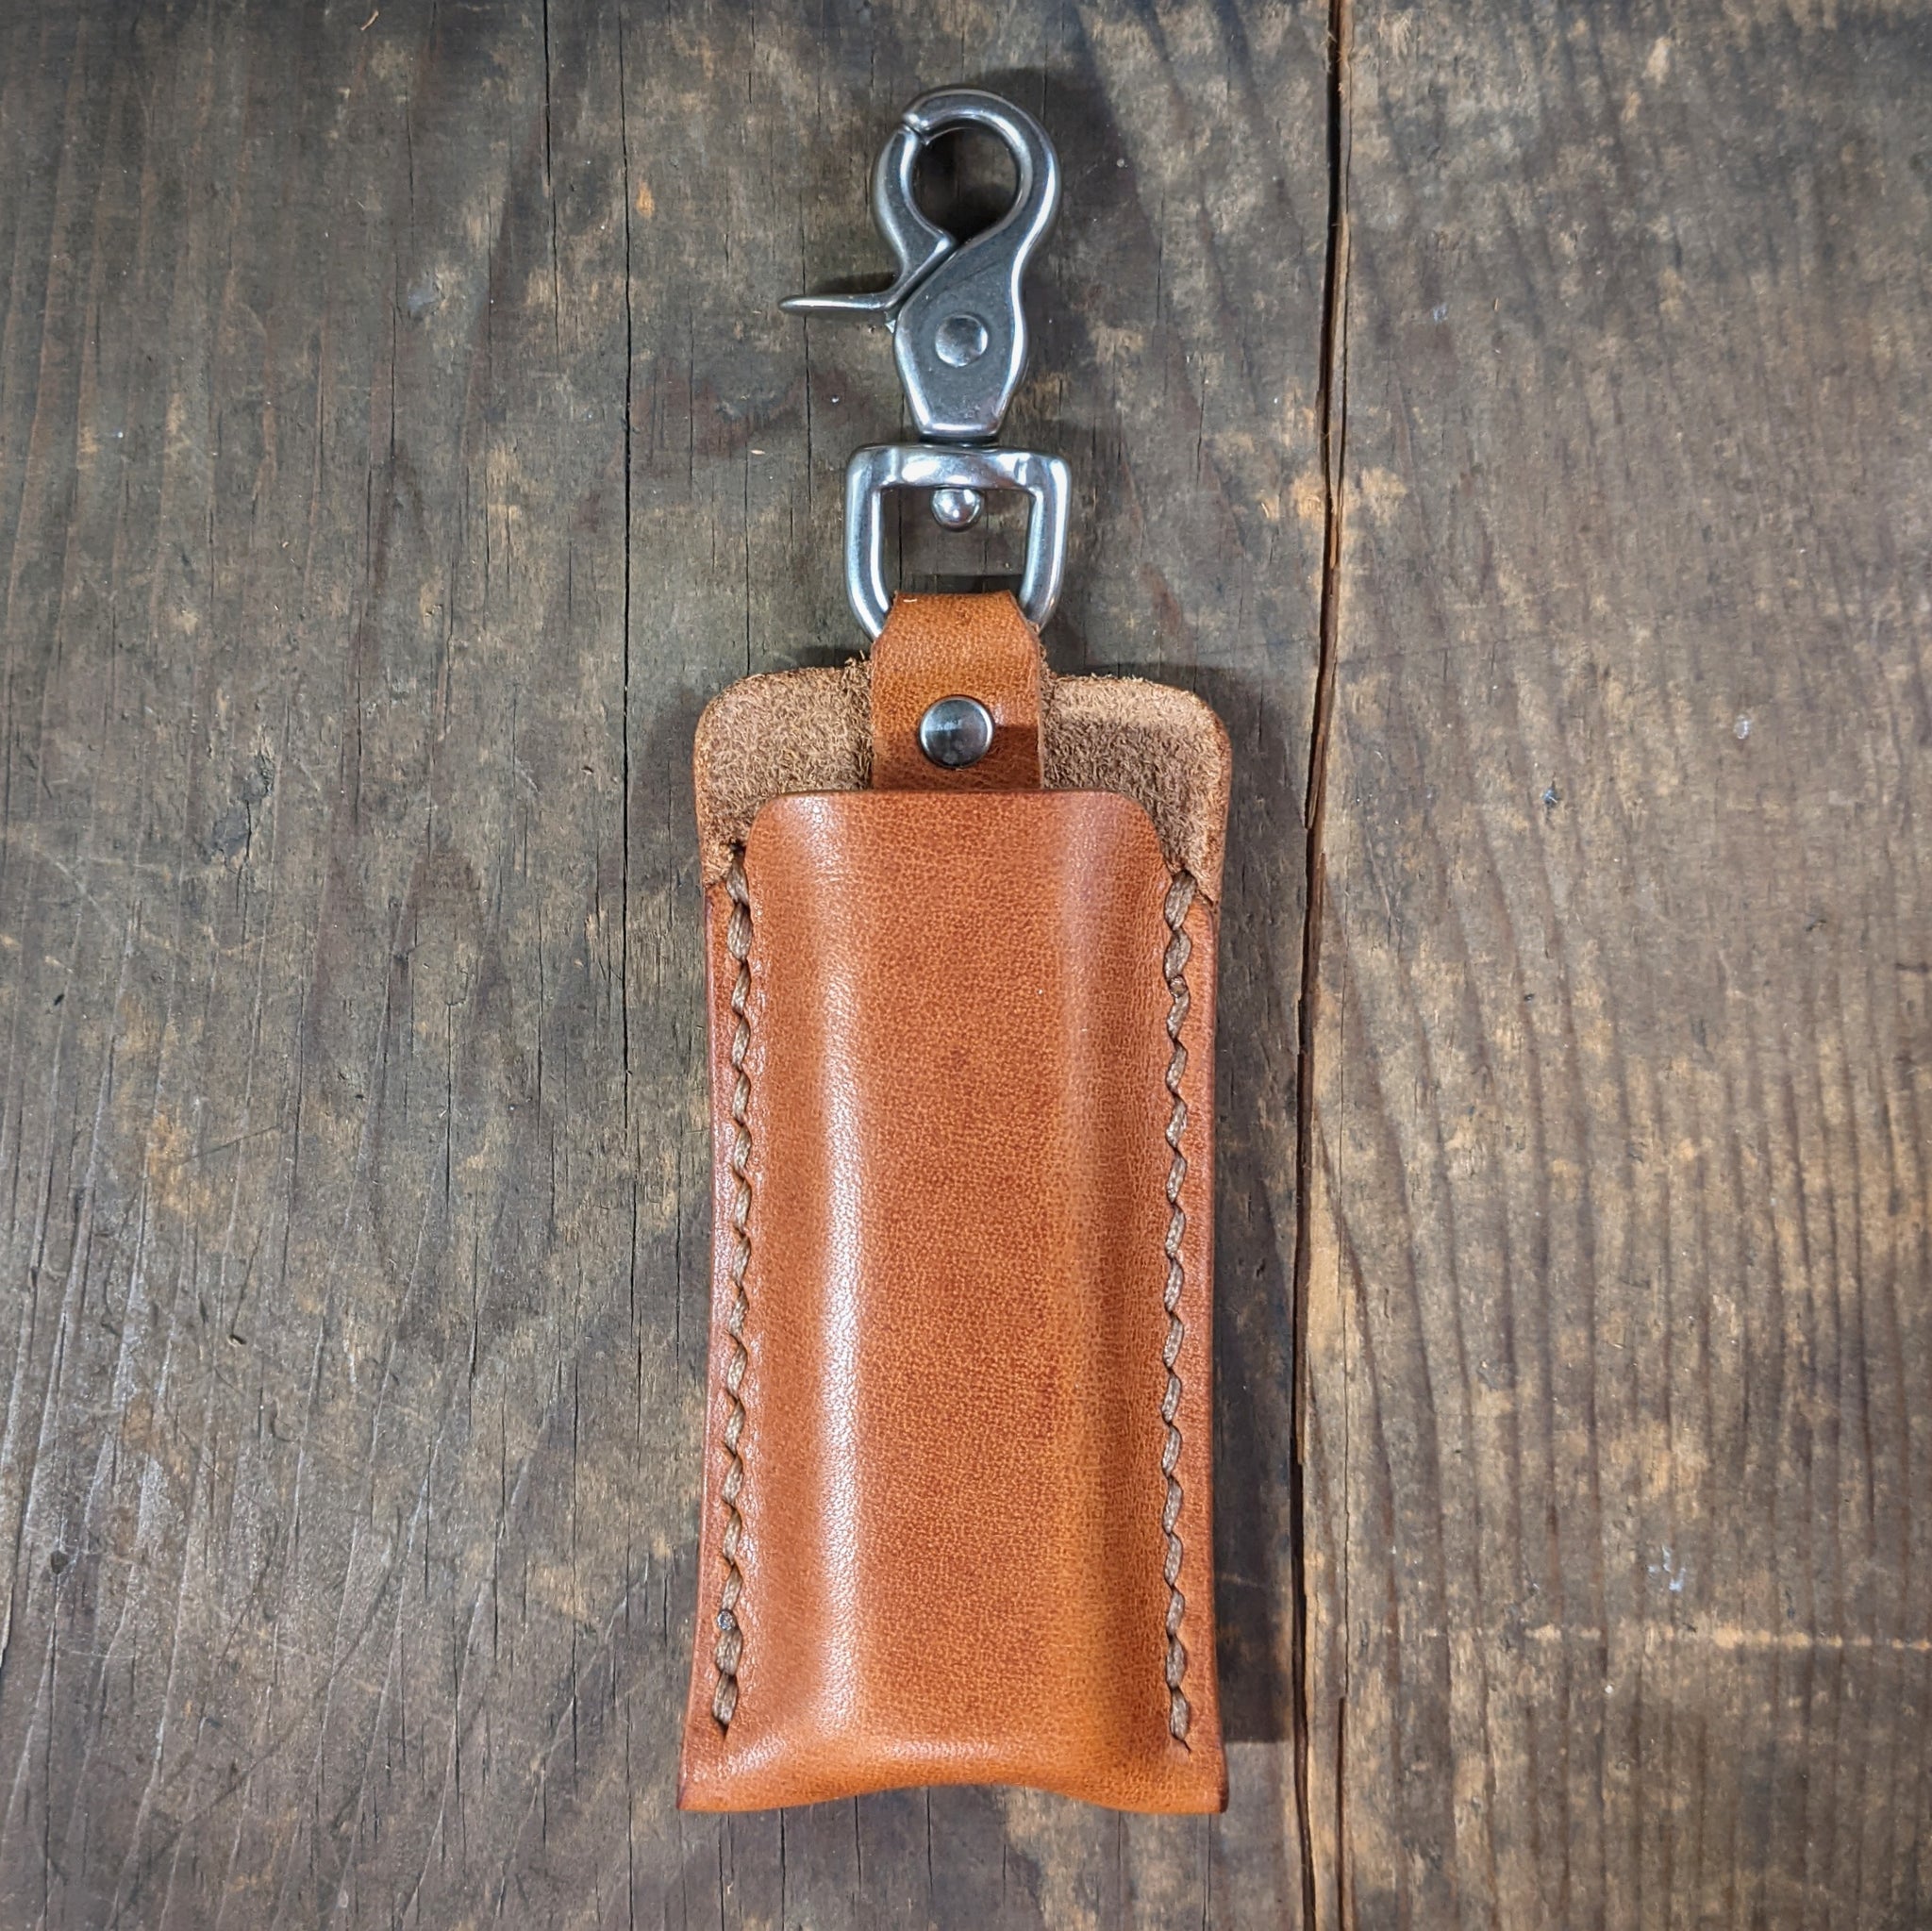 Ledger Nano Leather Keychain Case